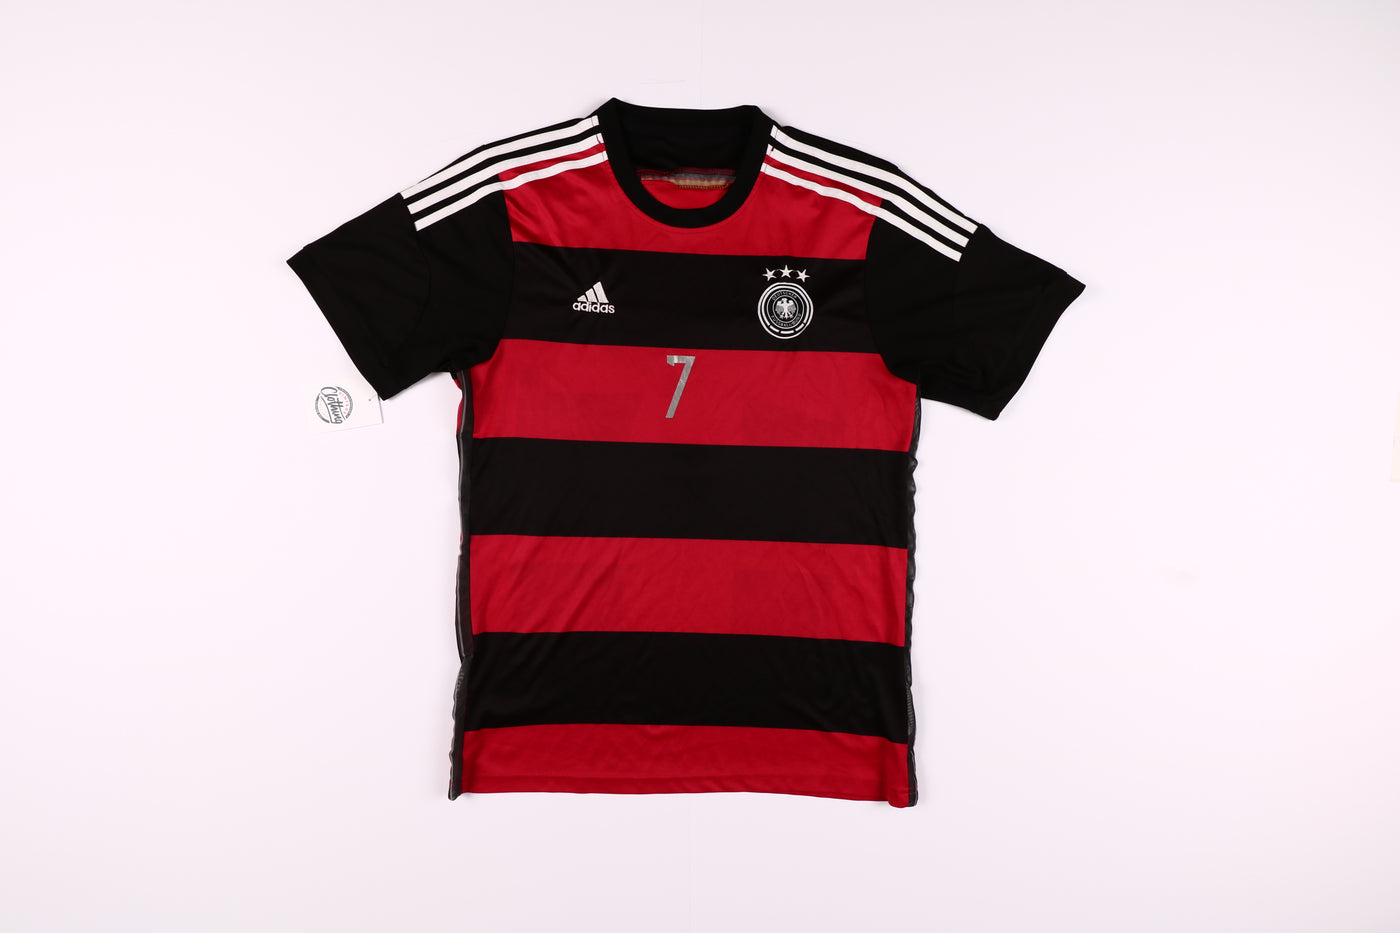 Maglia da calcio Adidas Germania 2014/2015 Schweinsteiger 7